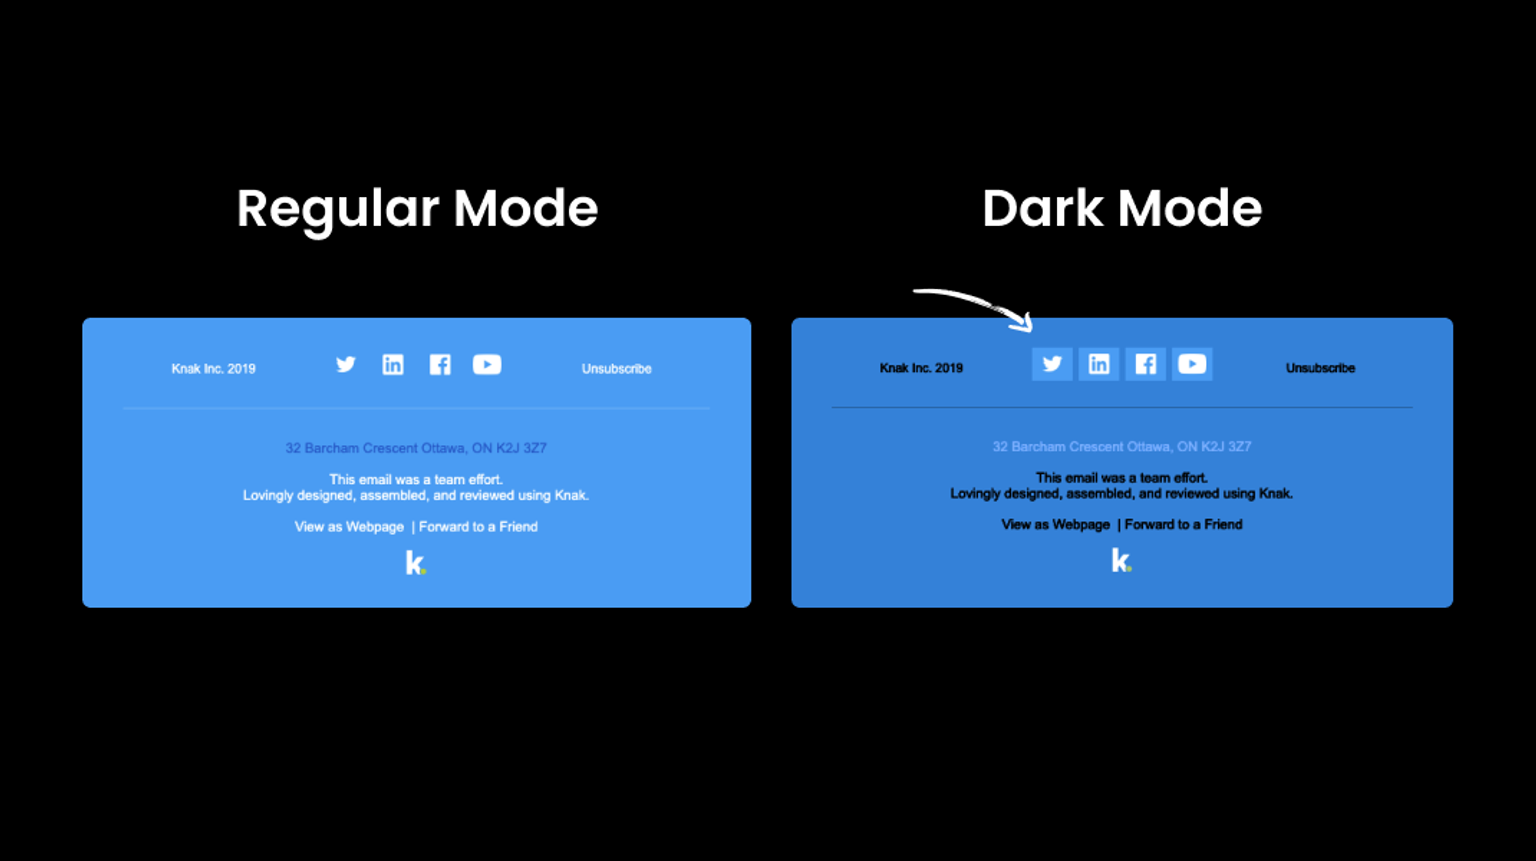 Regular Mode vs Dark Mode